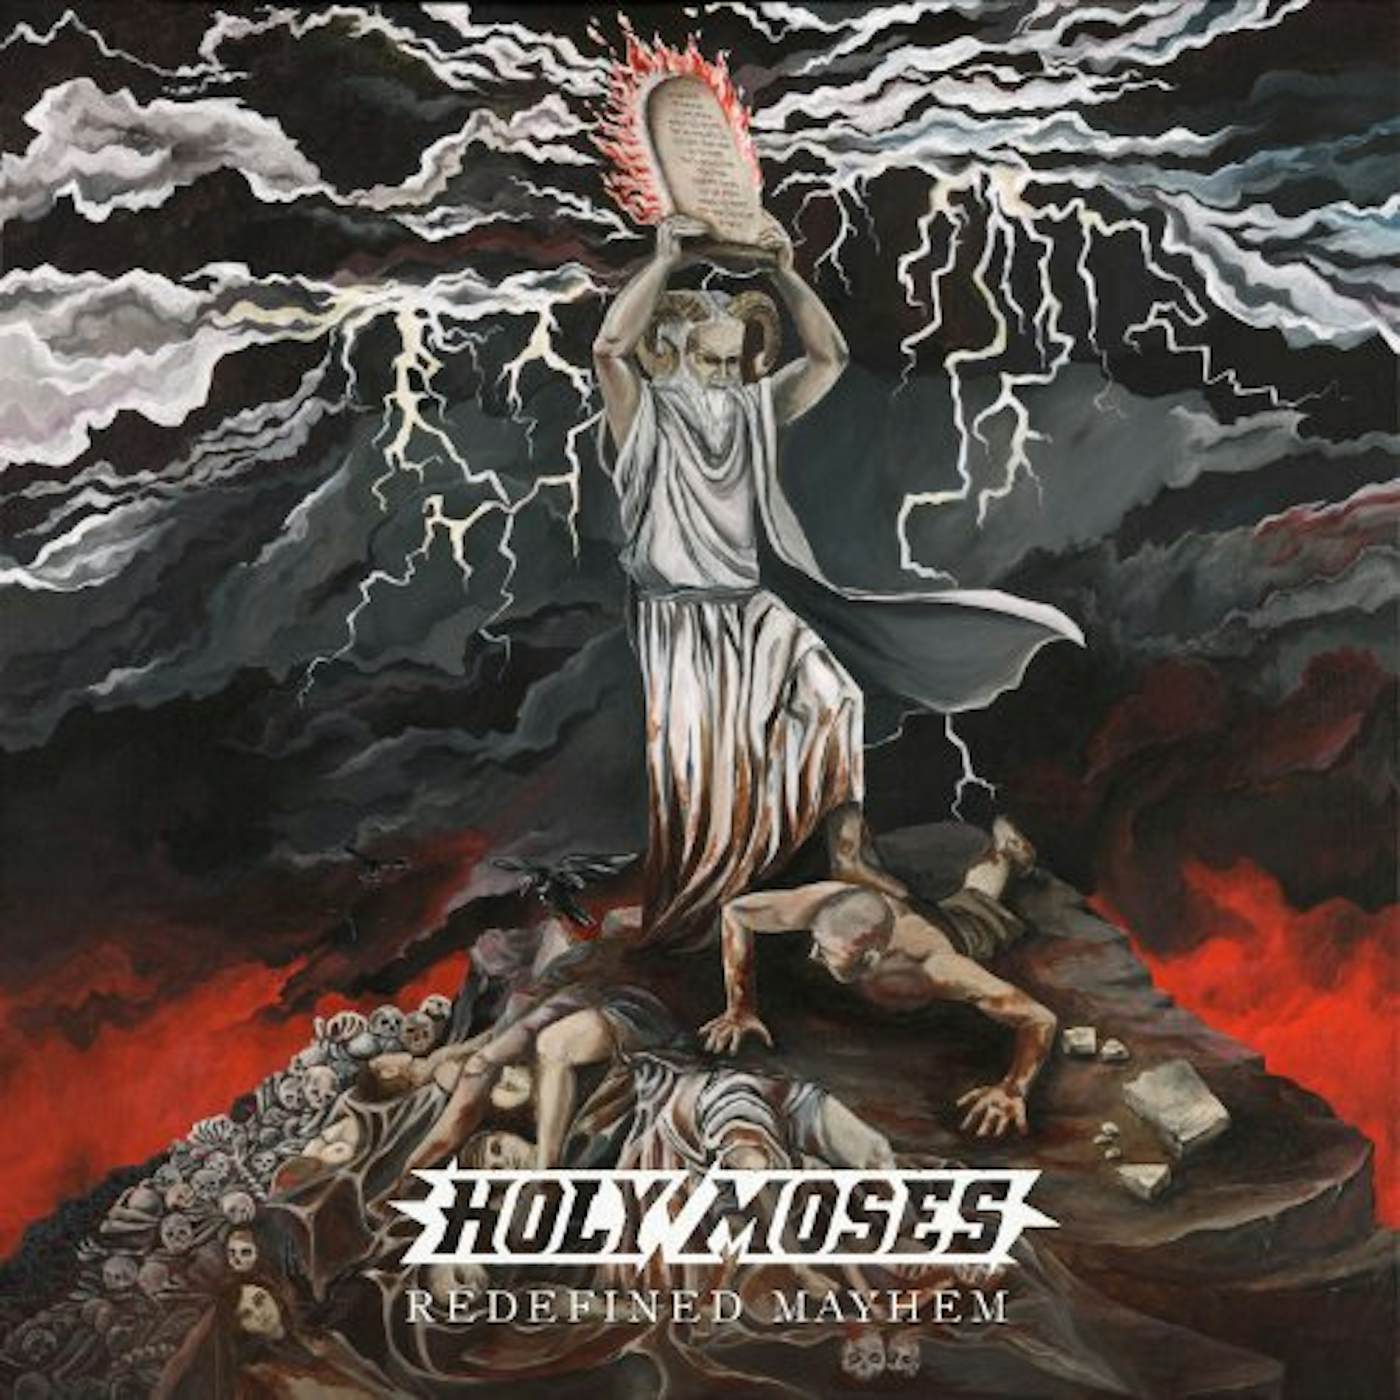 Holy Moses Redefined Mayhem Vinyl Record